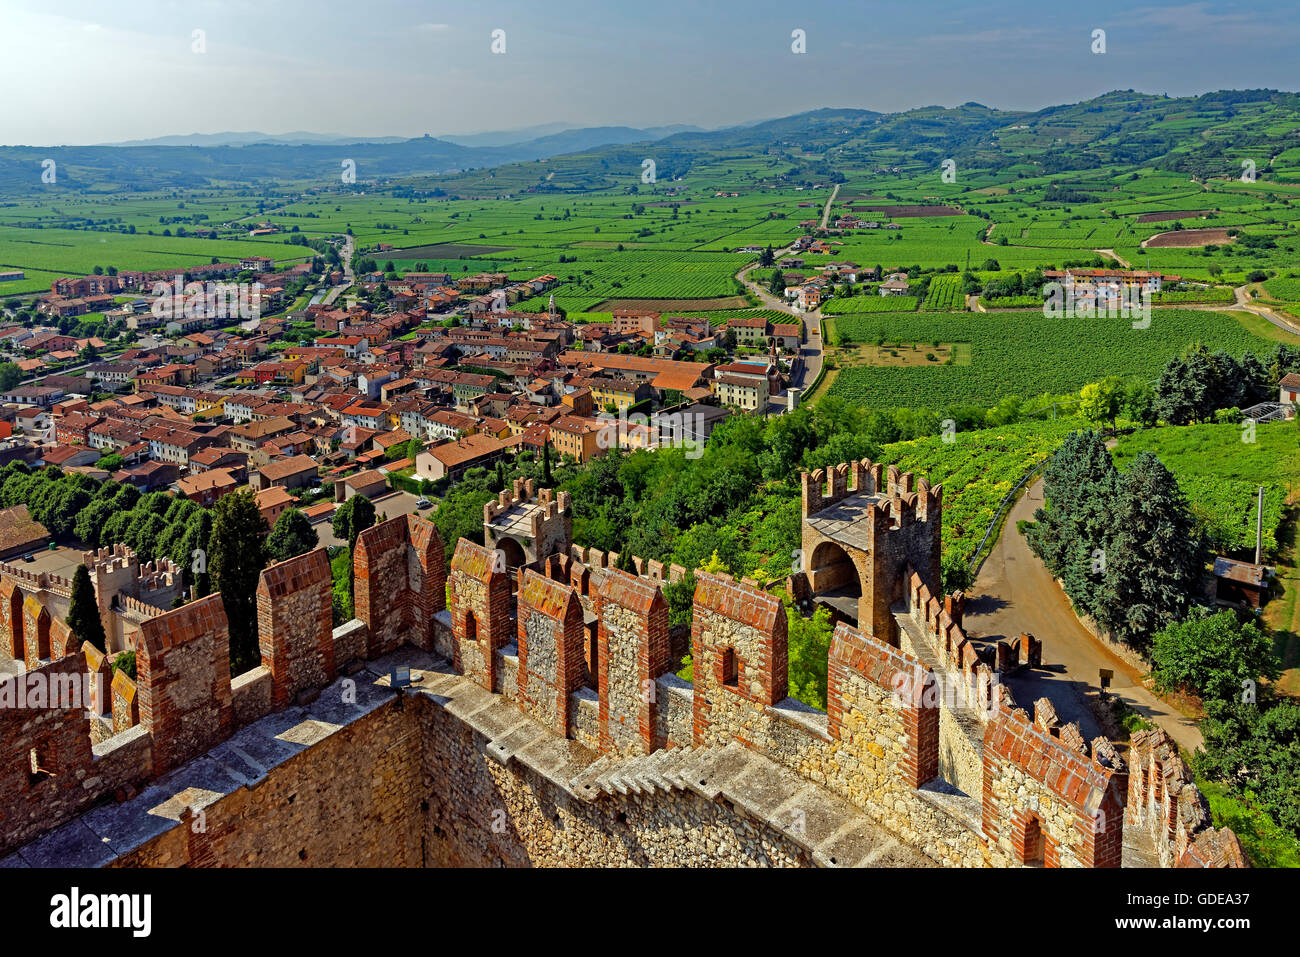 Scalierburg,Castello Medievale,vineyards,town,Soave Stock Photo